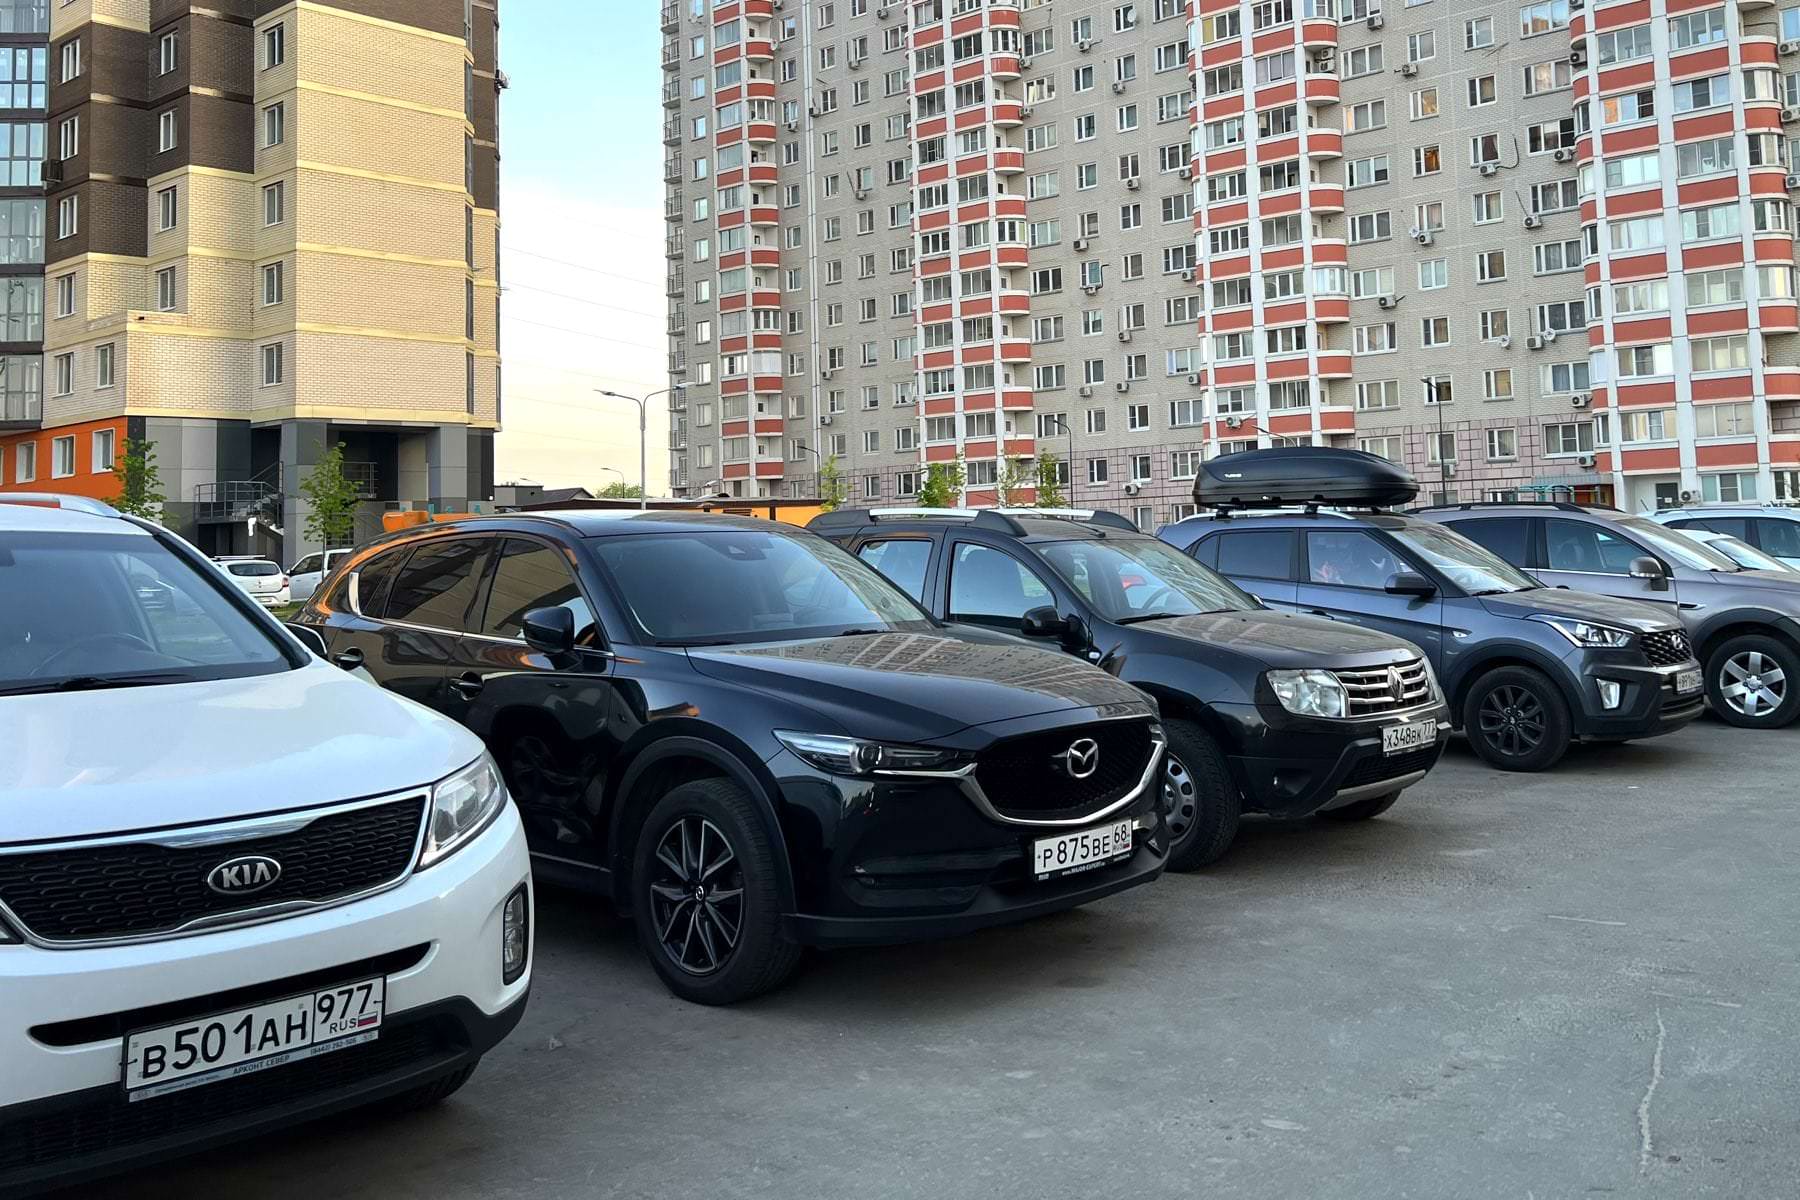 С 24 мая. Водителей автомобилей будут массово штрафовать на 3 000 рублей за использование кондиционера